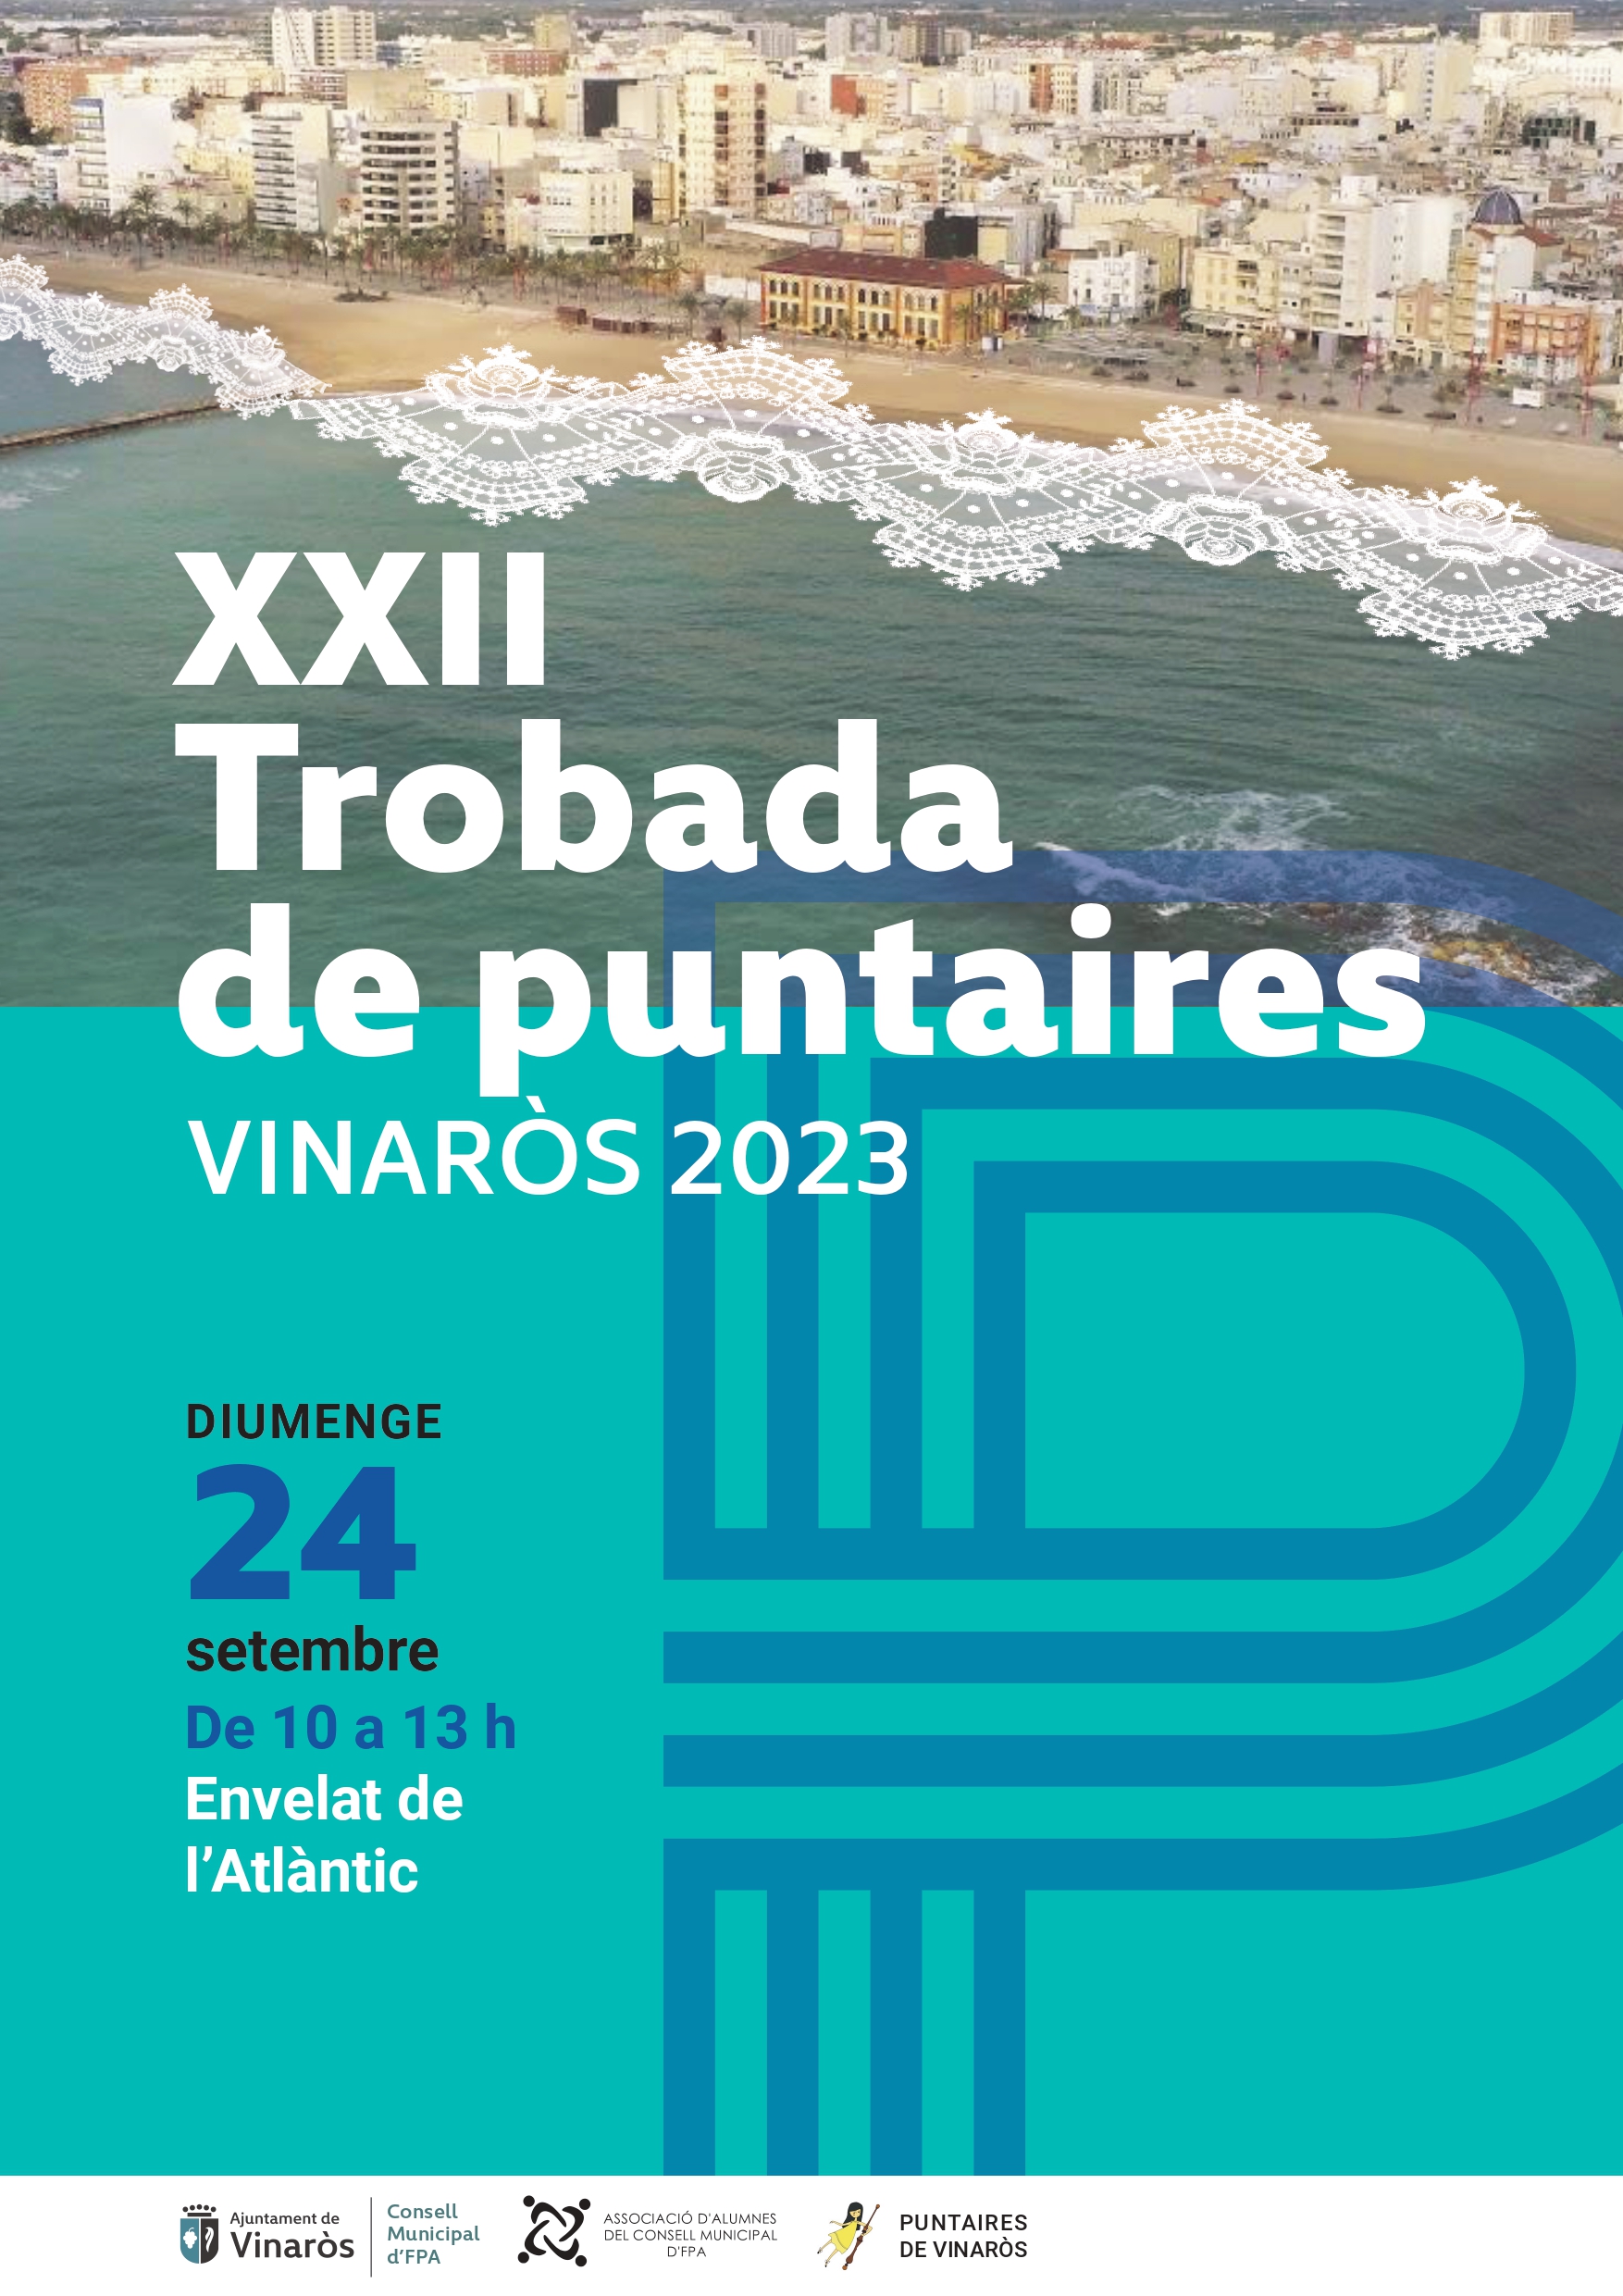 ENCUENTRO DE BOLILLERAS VINAROS 2023